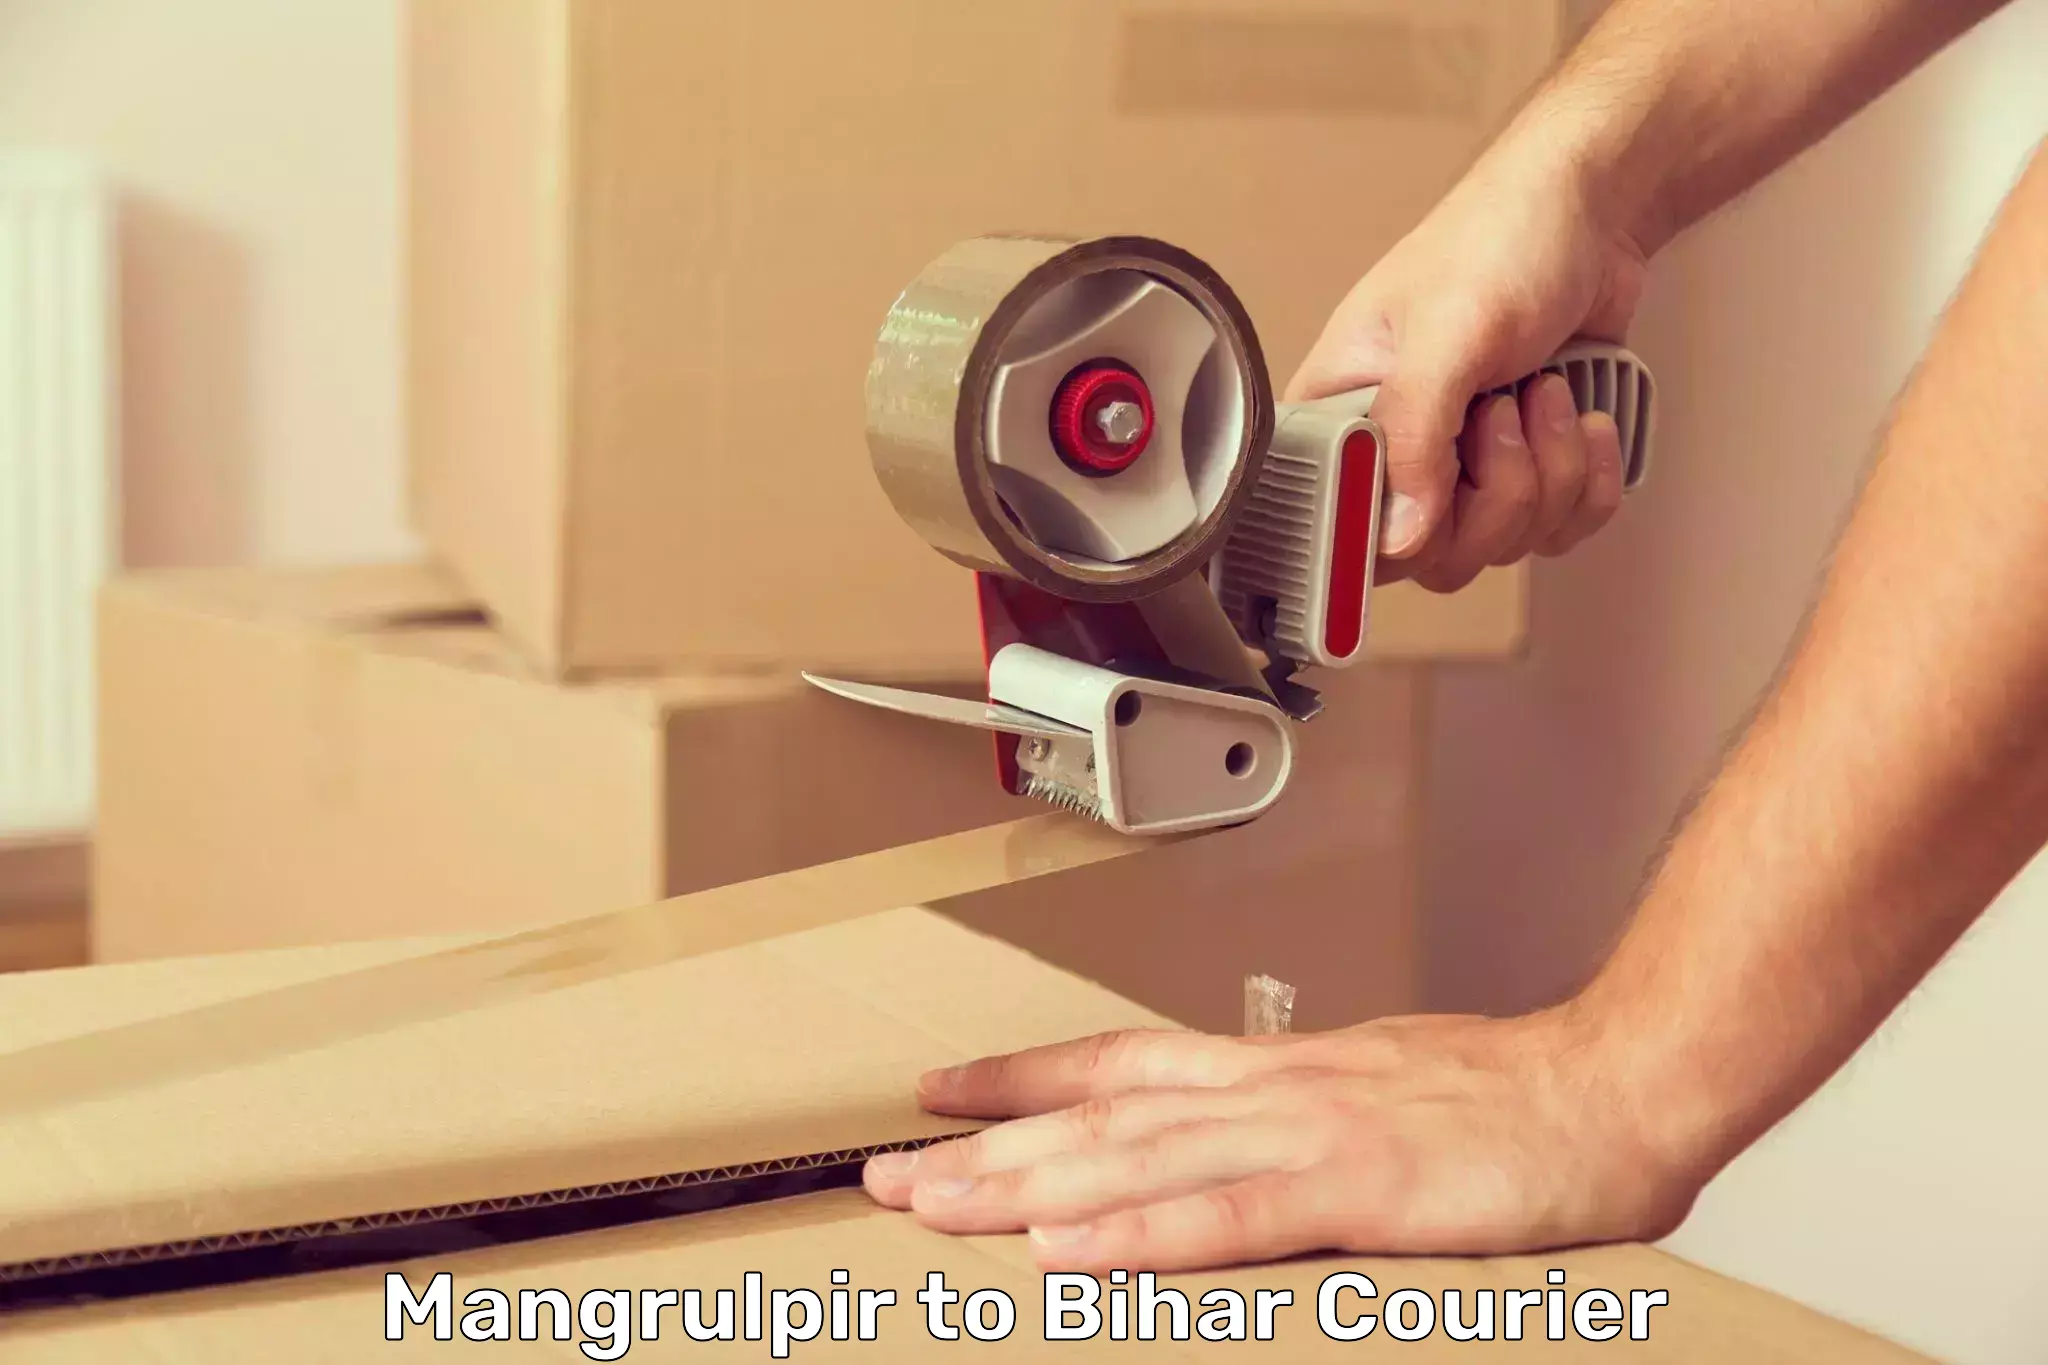 Door-to-door freight service Mangrulpir to Chainpur